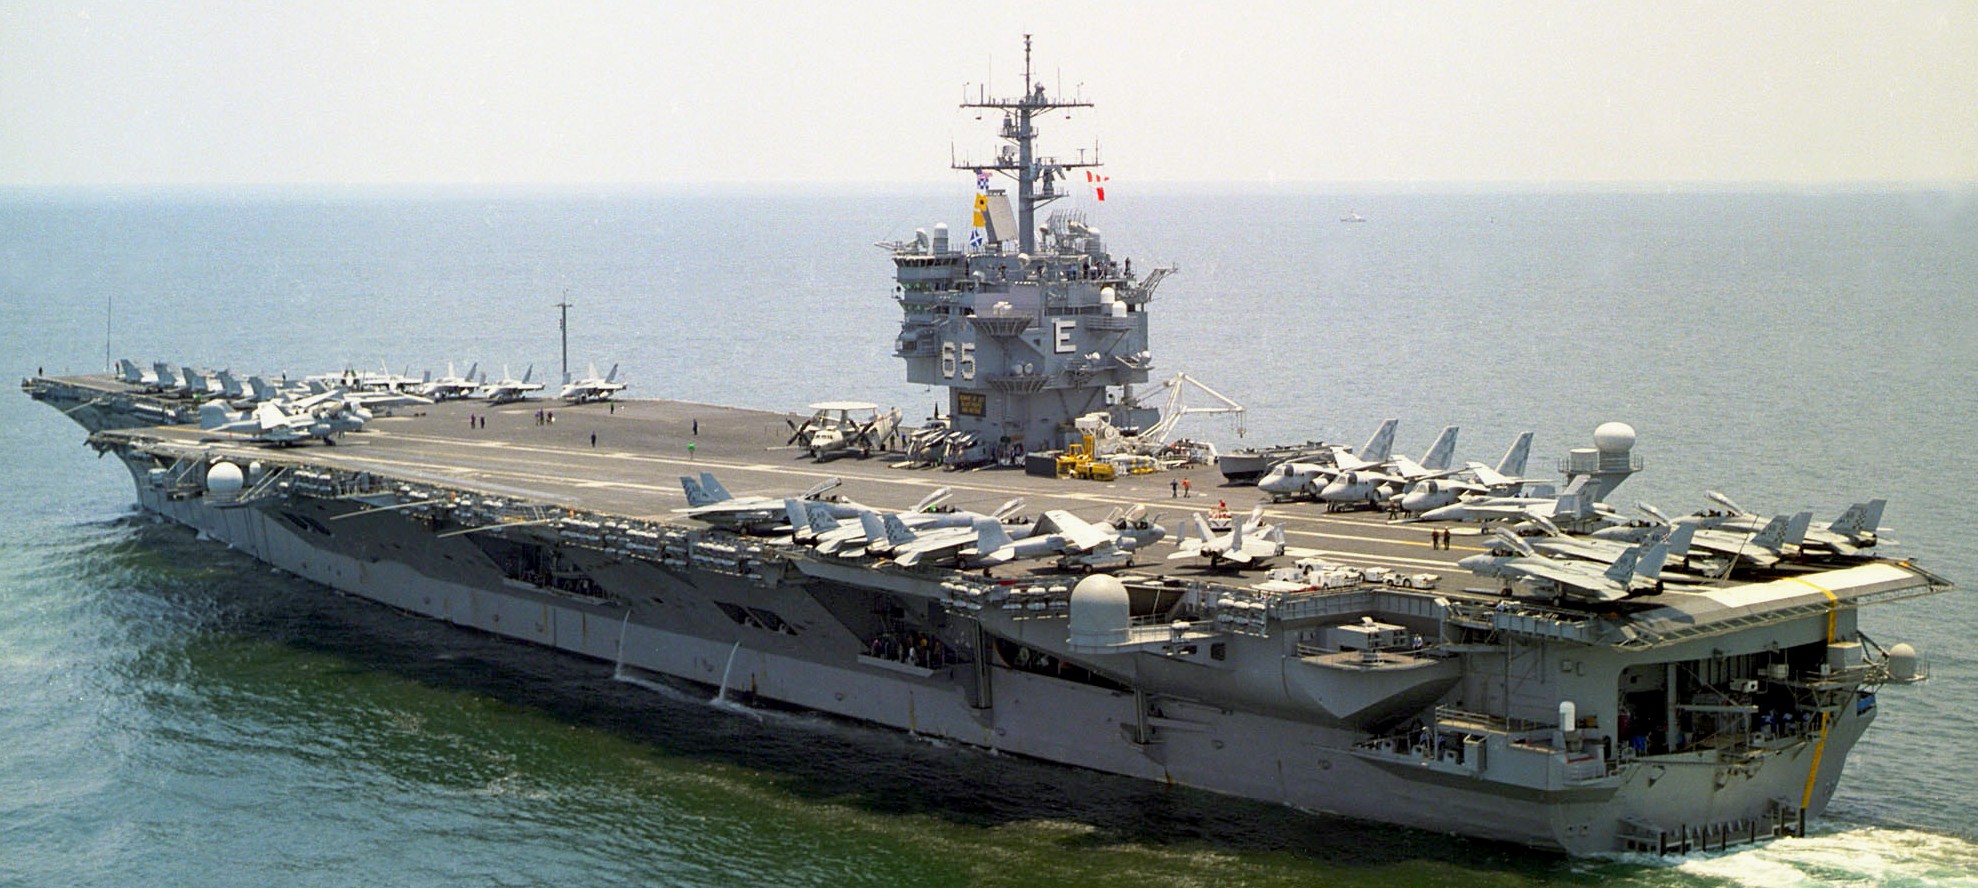 cvn-65 uss enterprise aircraft carrier us navy tsta 2003 71